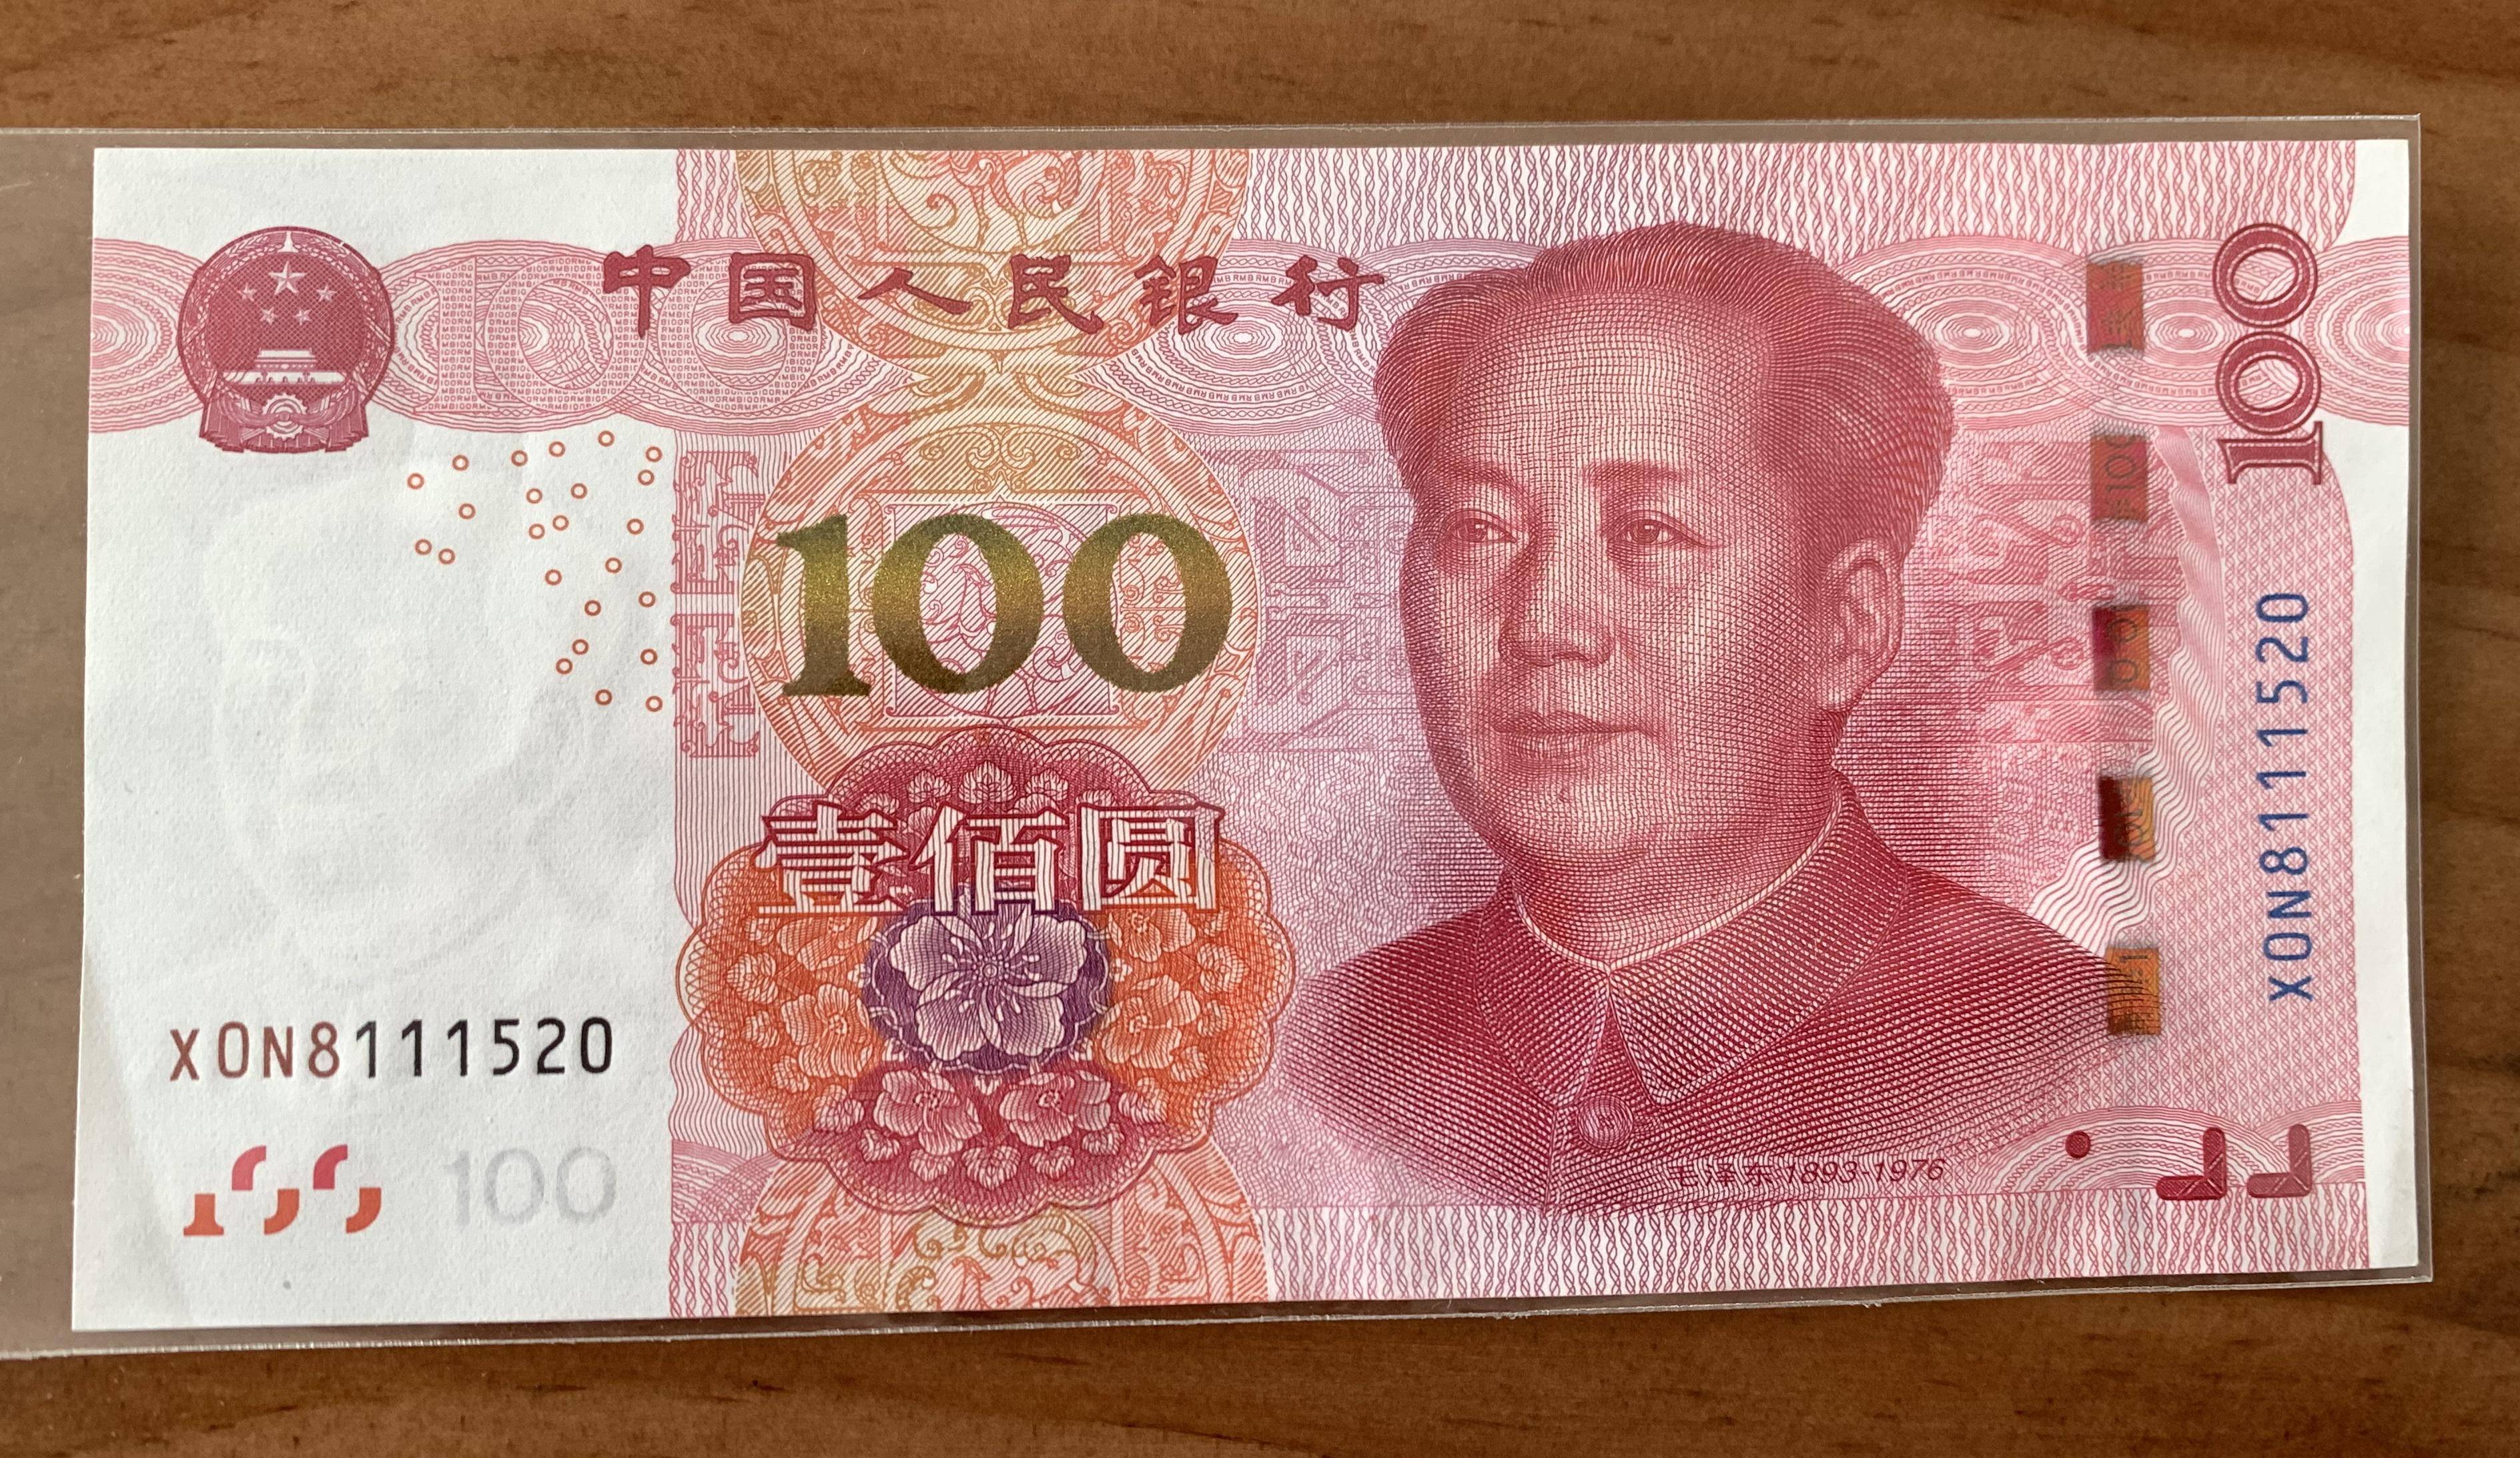 台湾钱币图片人民币图片